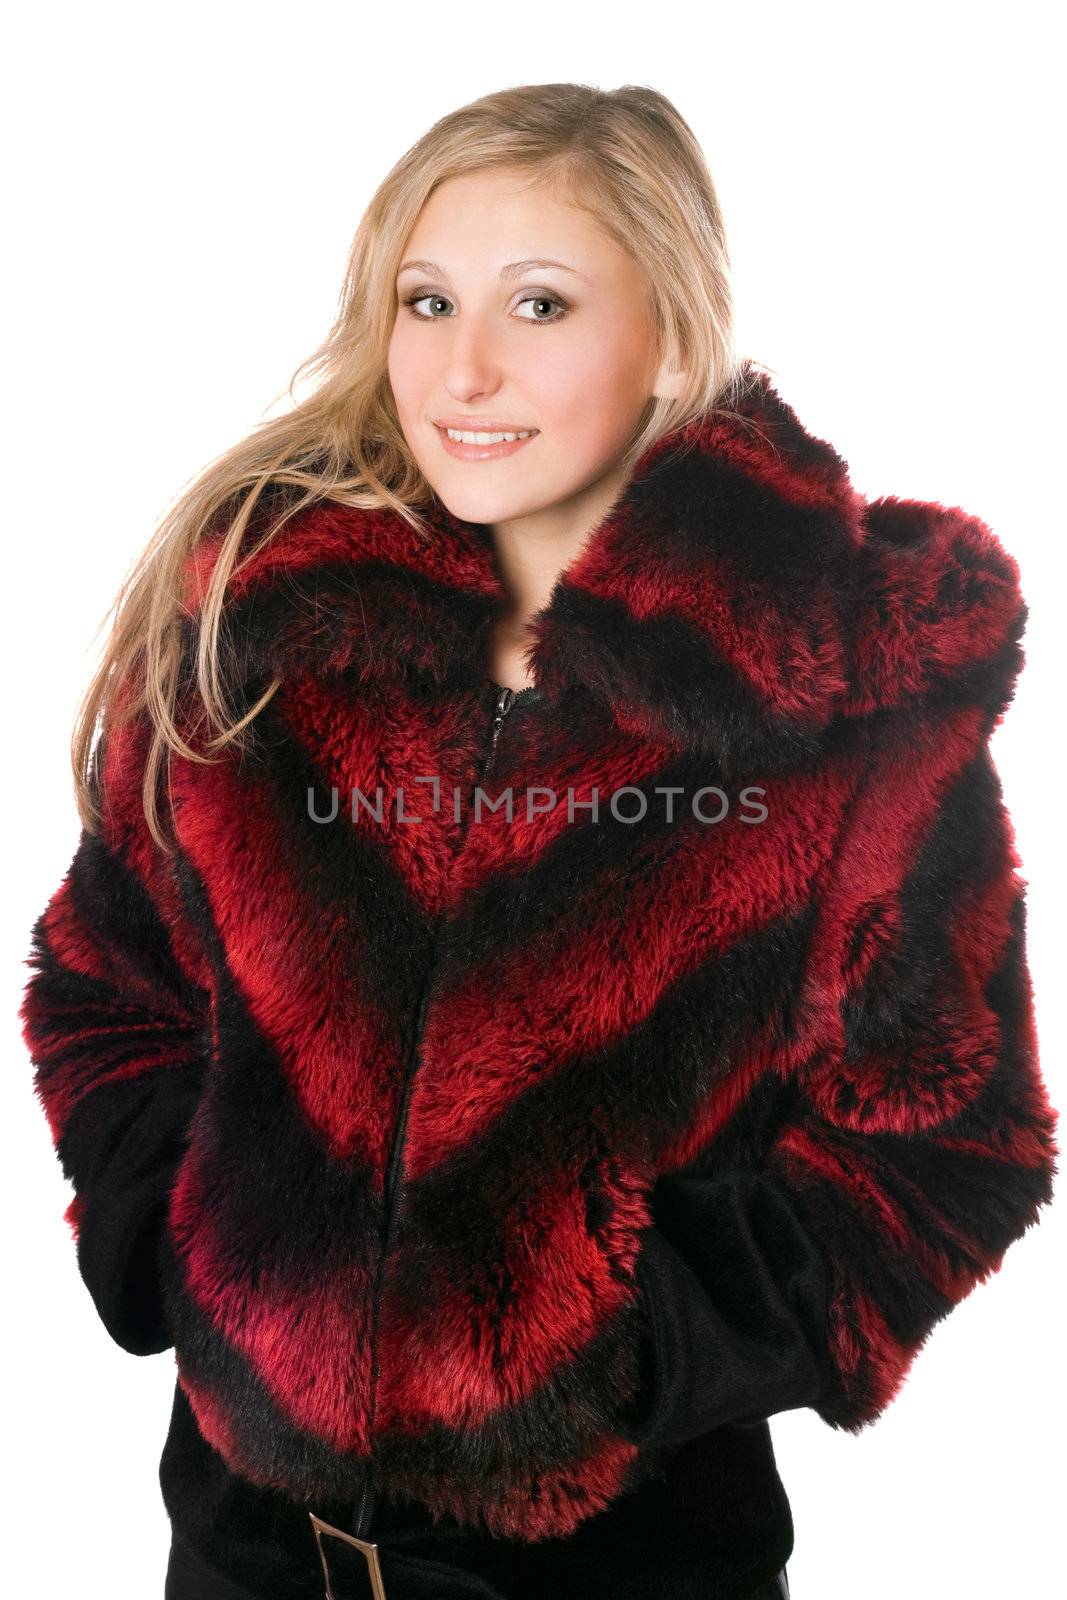 Portrait of joyful blond woman in fur jacket by acidgrey